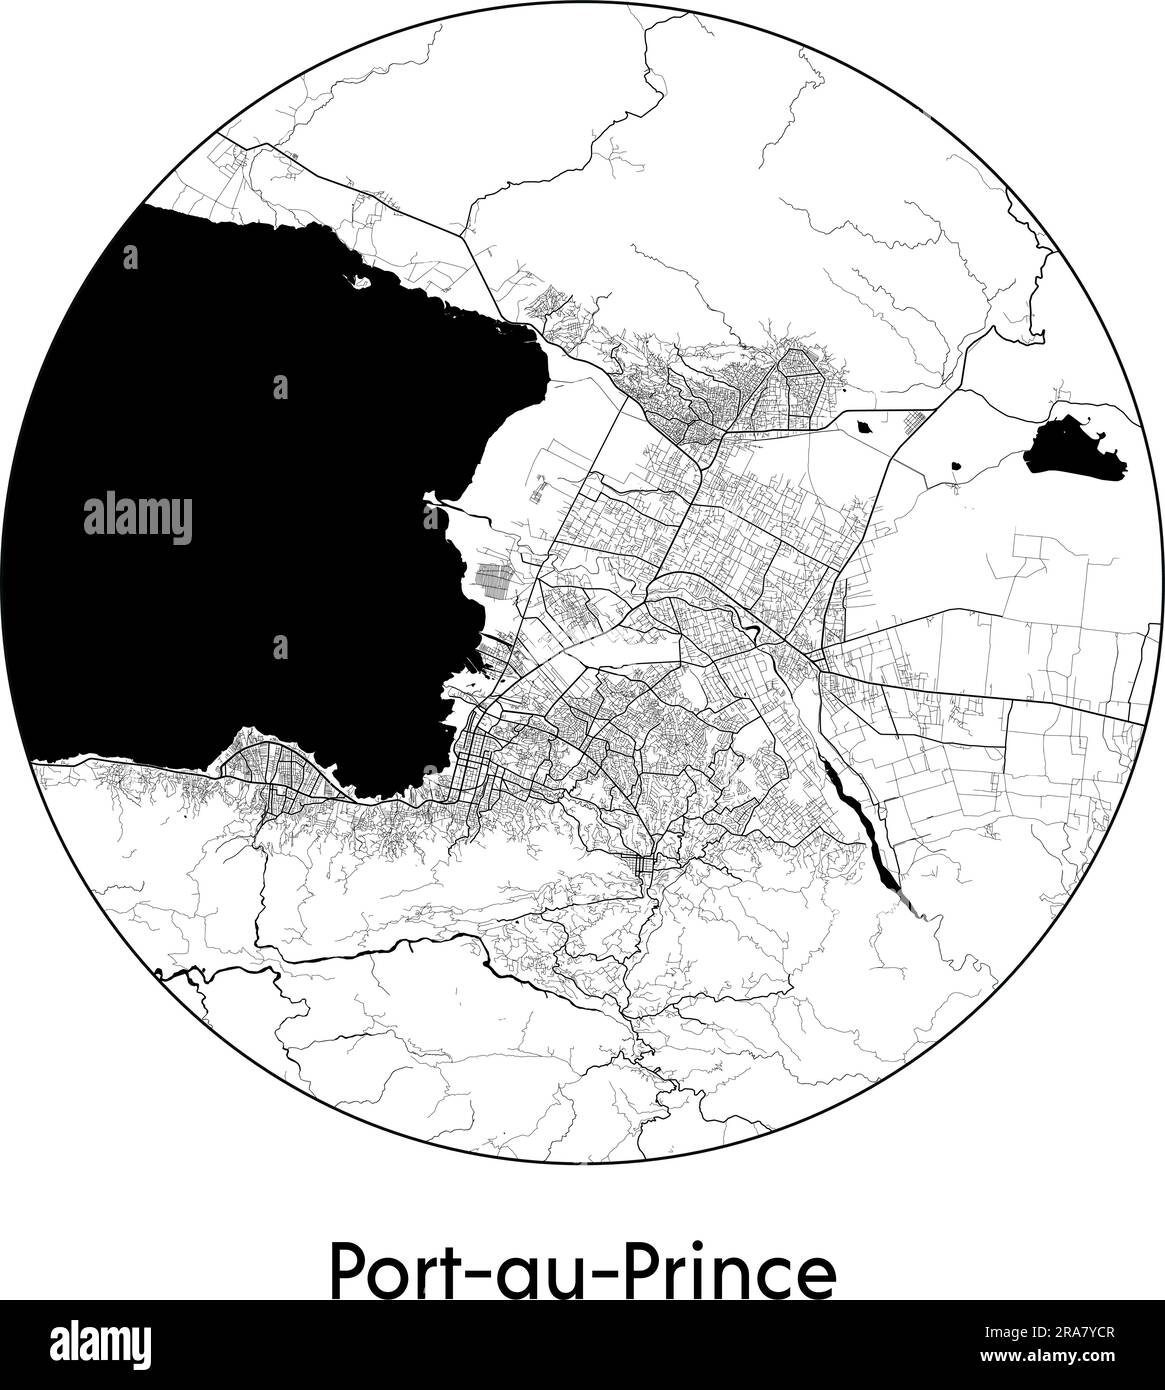 Carte de la ville Port-au-Prince Haïti Amérique du Nord illustration vectorielle noir blanc Illustration de Vecteur